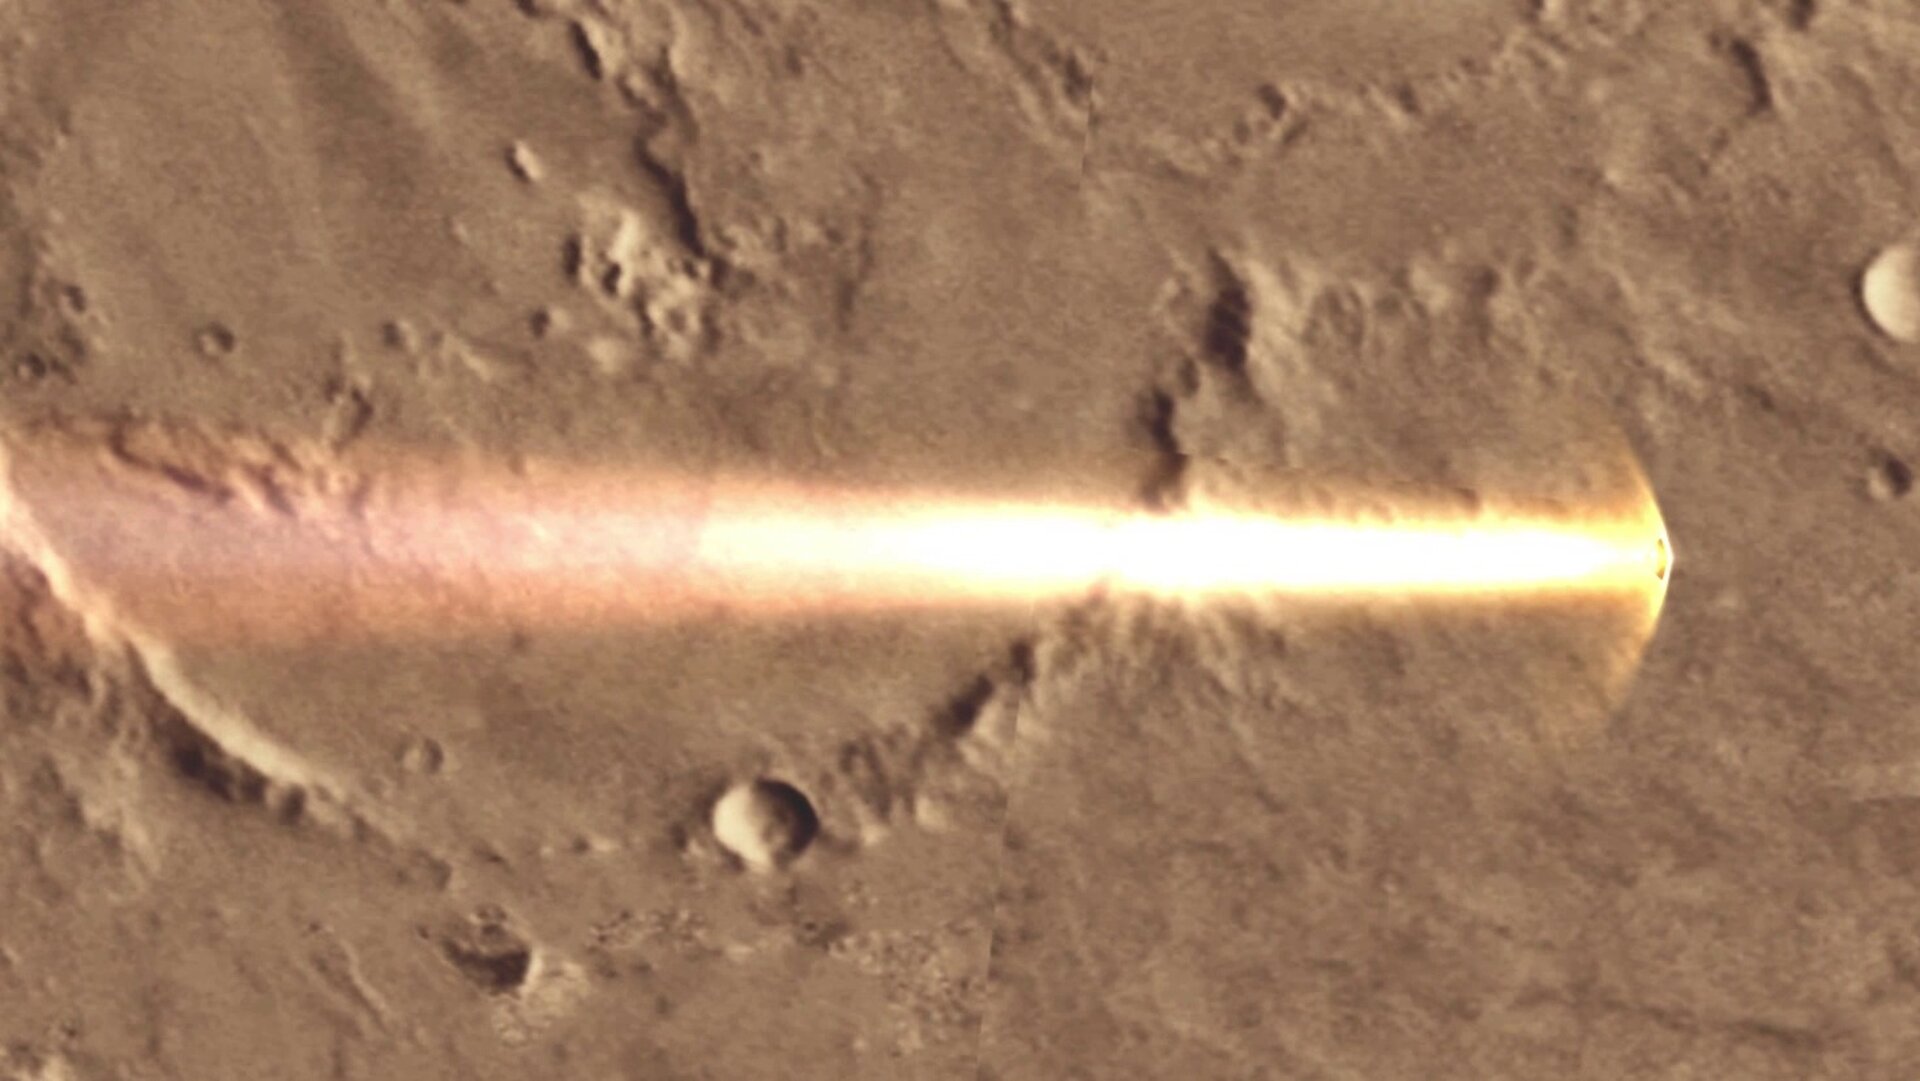 Schiaparelli's afdaling naar het Mars-oppervlak